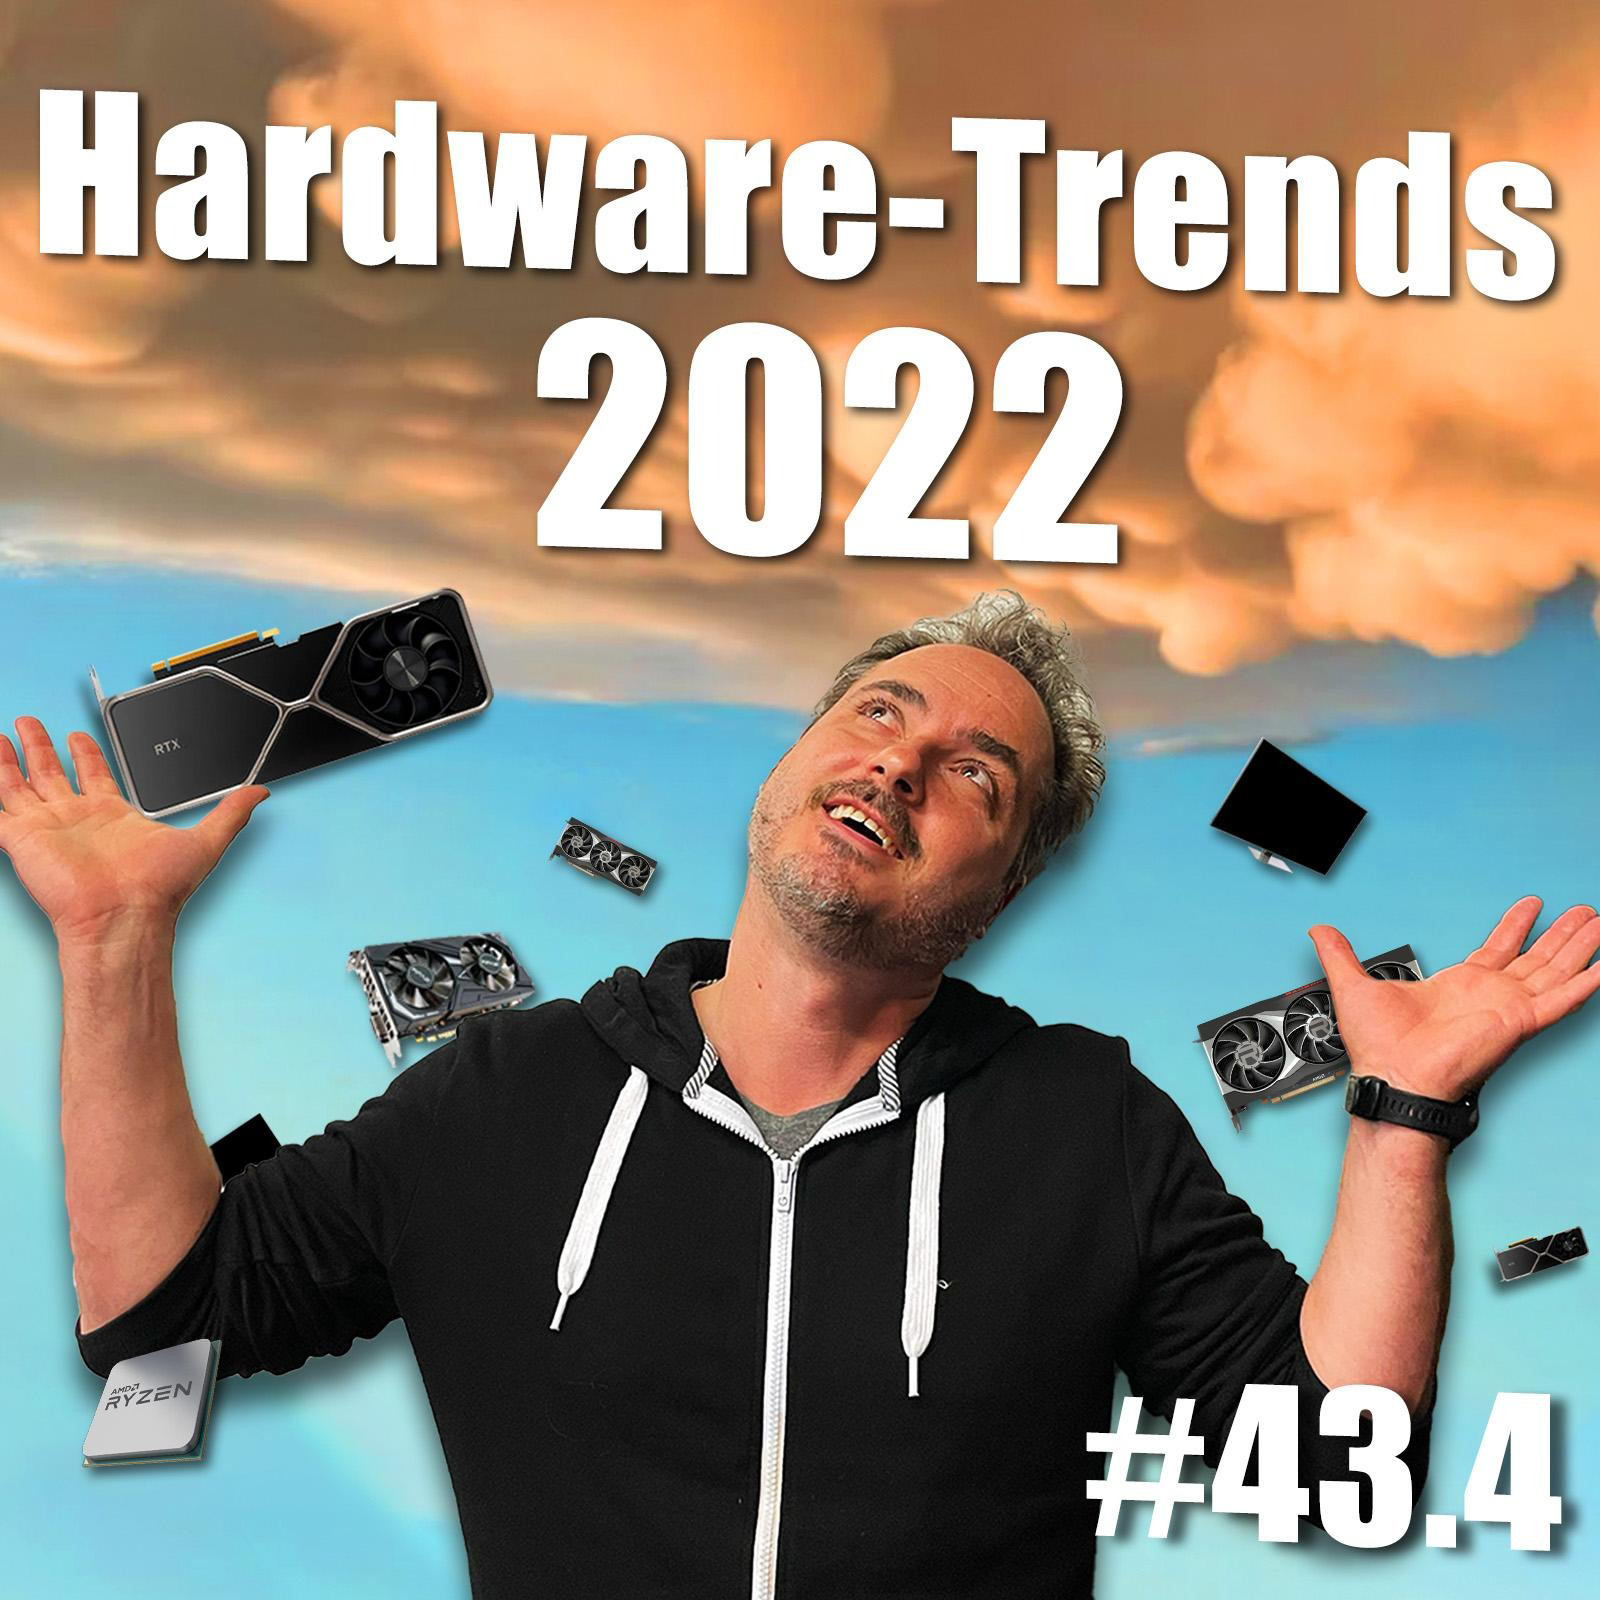 Hardware-Trends 2022 | c't uplink #43.4